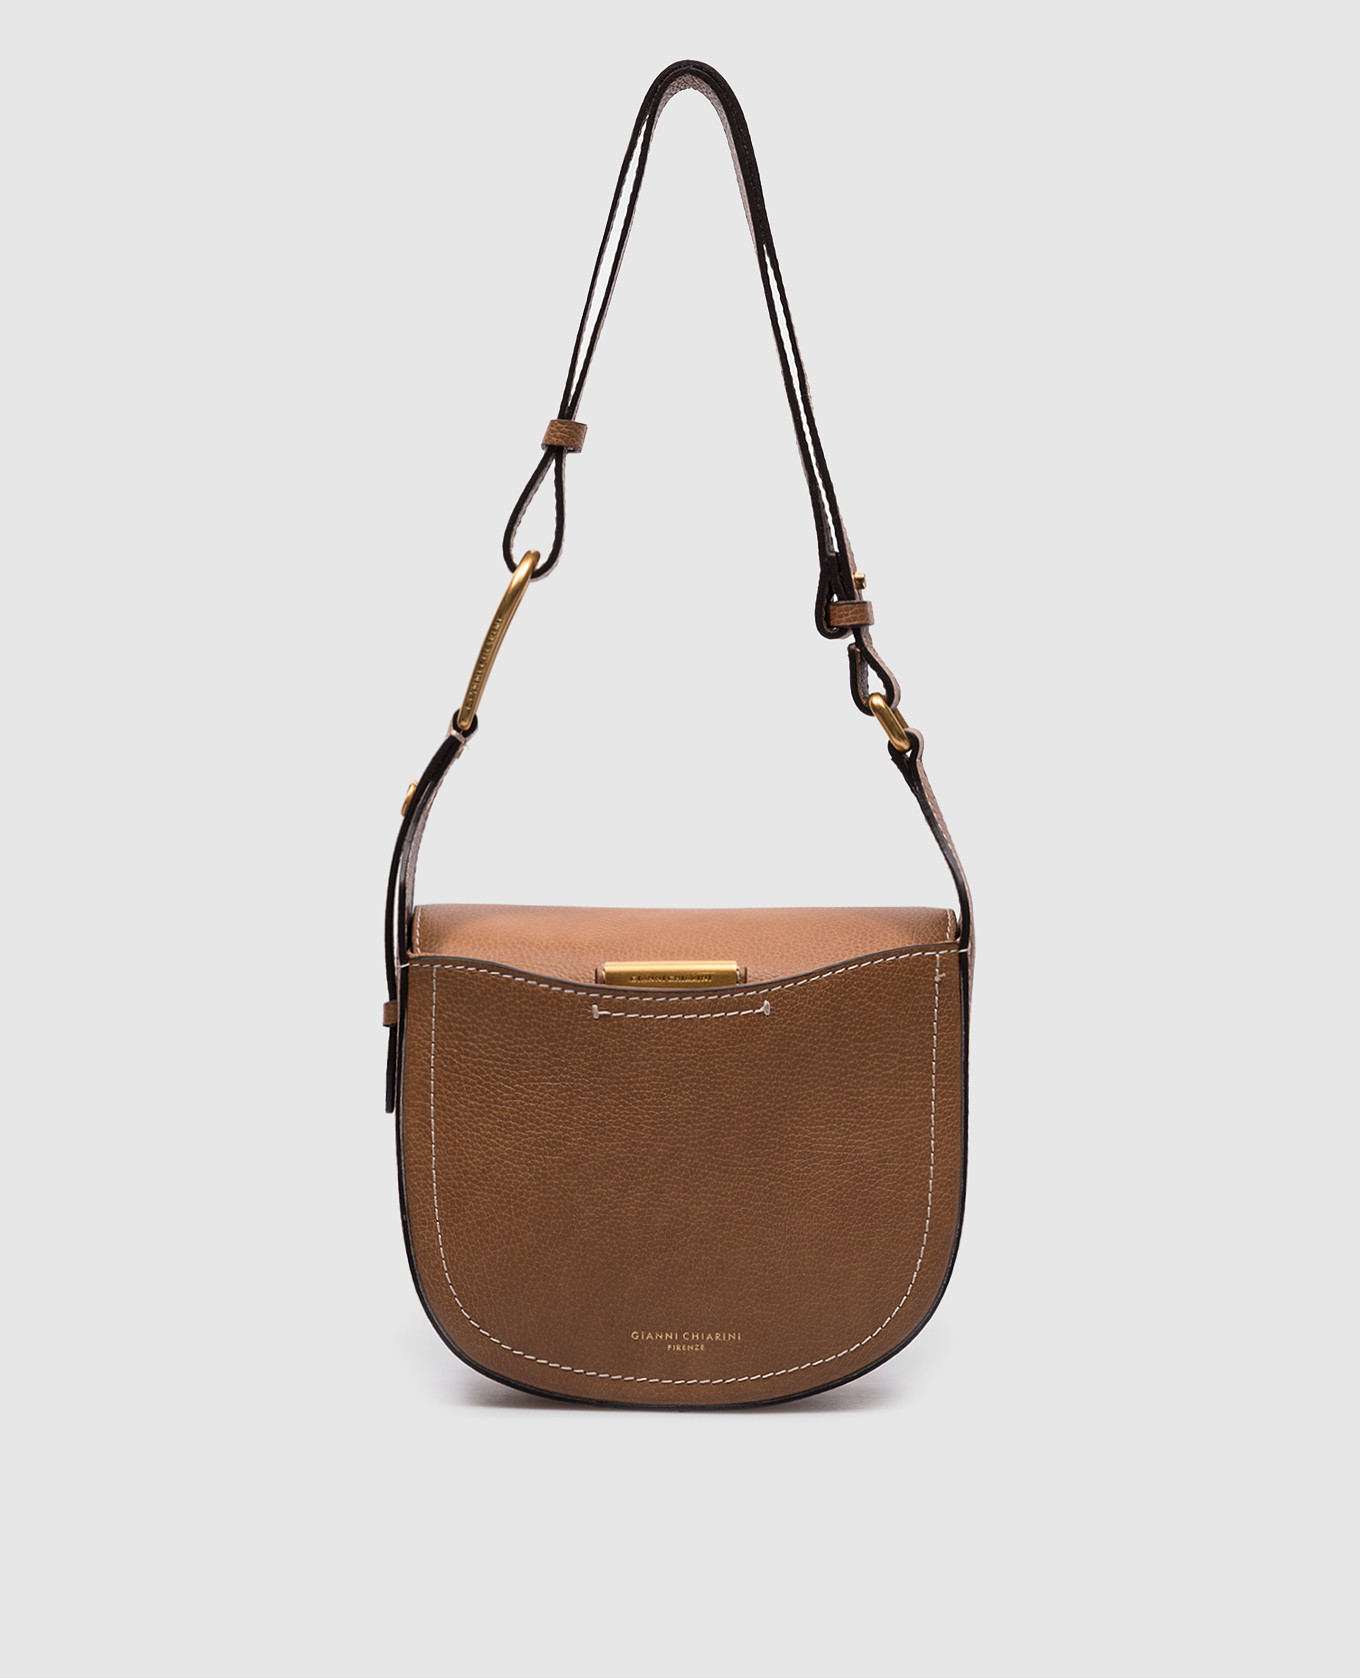 Sandy brown leather saddle bag with logo print